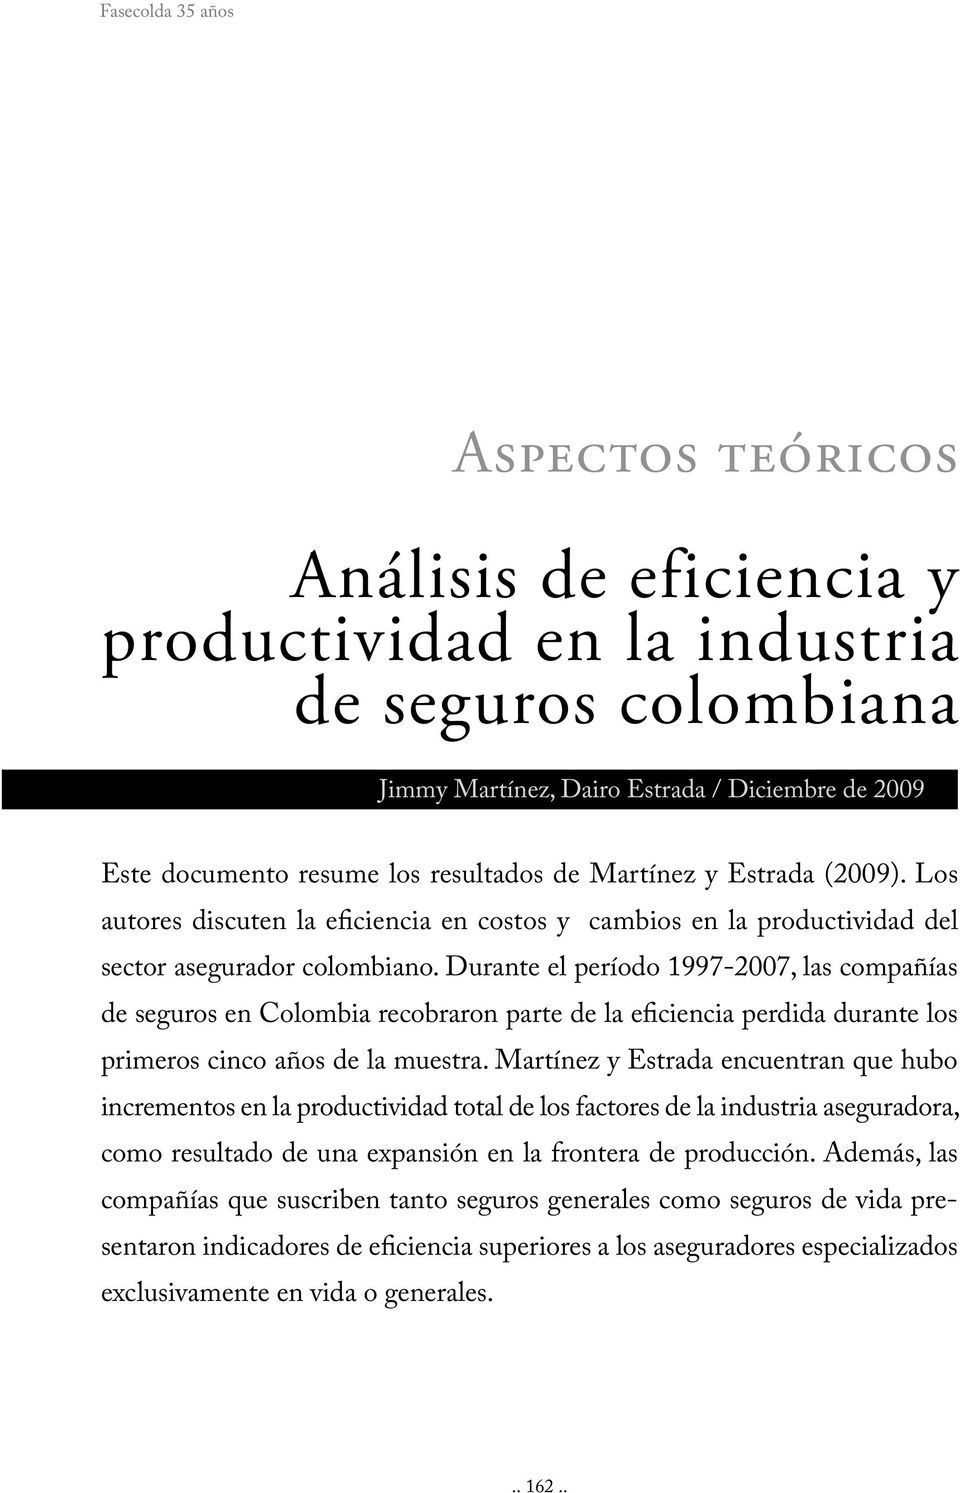 Durante el período 1997-2007, las compañías de seguros en Colombia recobraron parte de la eficiencia perdida durante los primeros cinco años de la muestra.